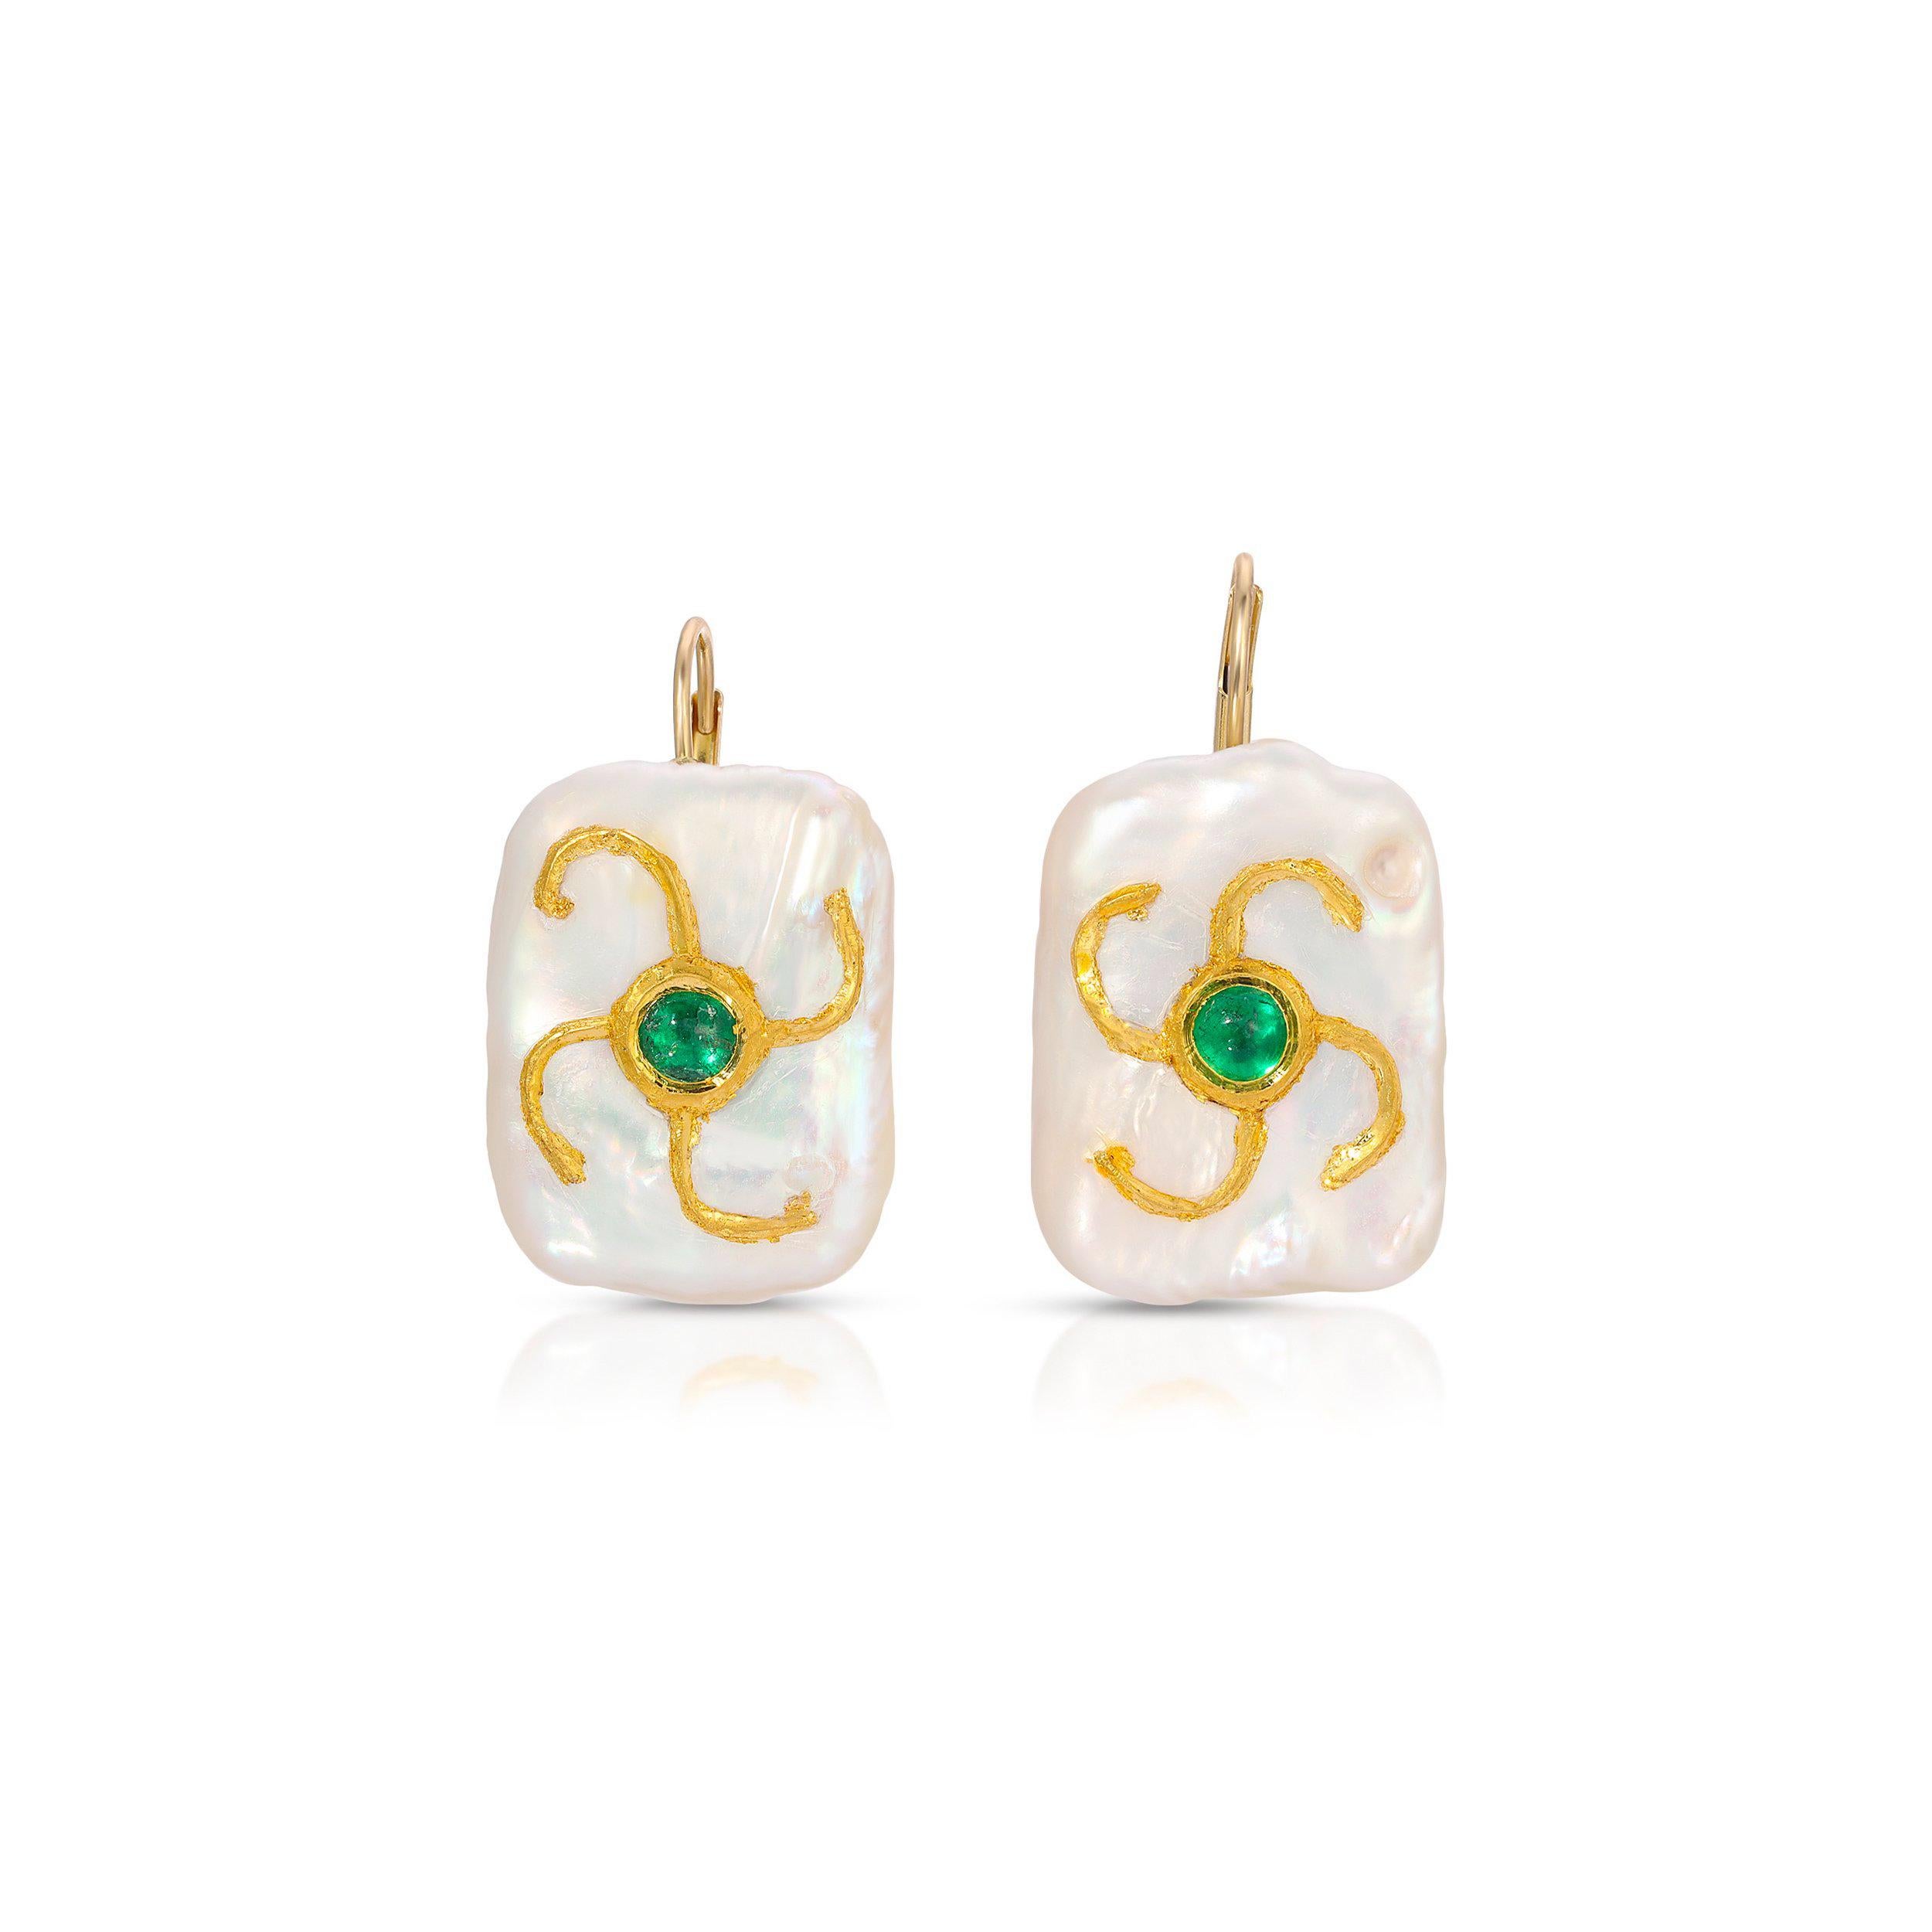 Des boucles d'oreilles lumineuses et allongées en forme de perles baroques serties d'émeraudes en or 22 carats... une interprétation moderne et unique du 